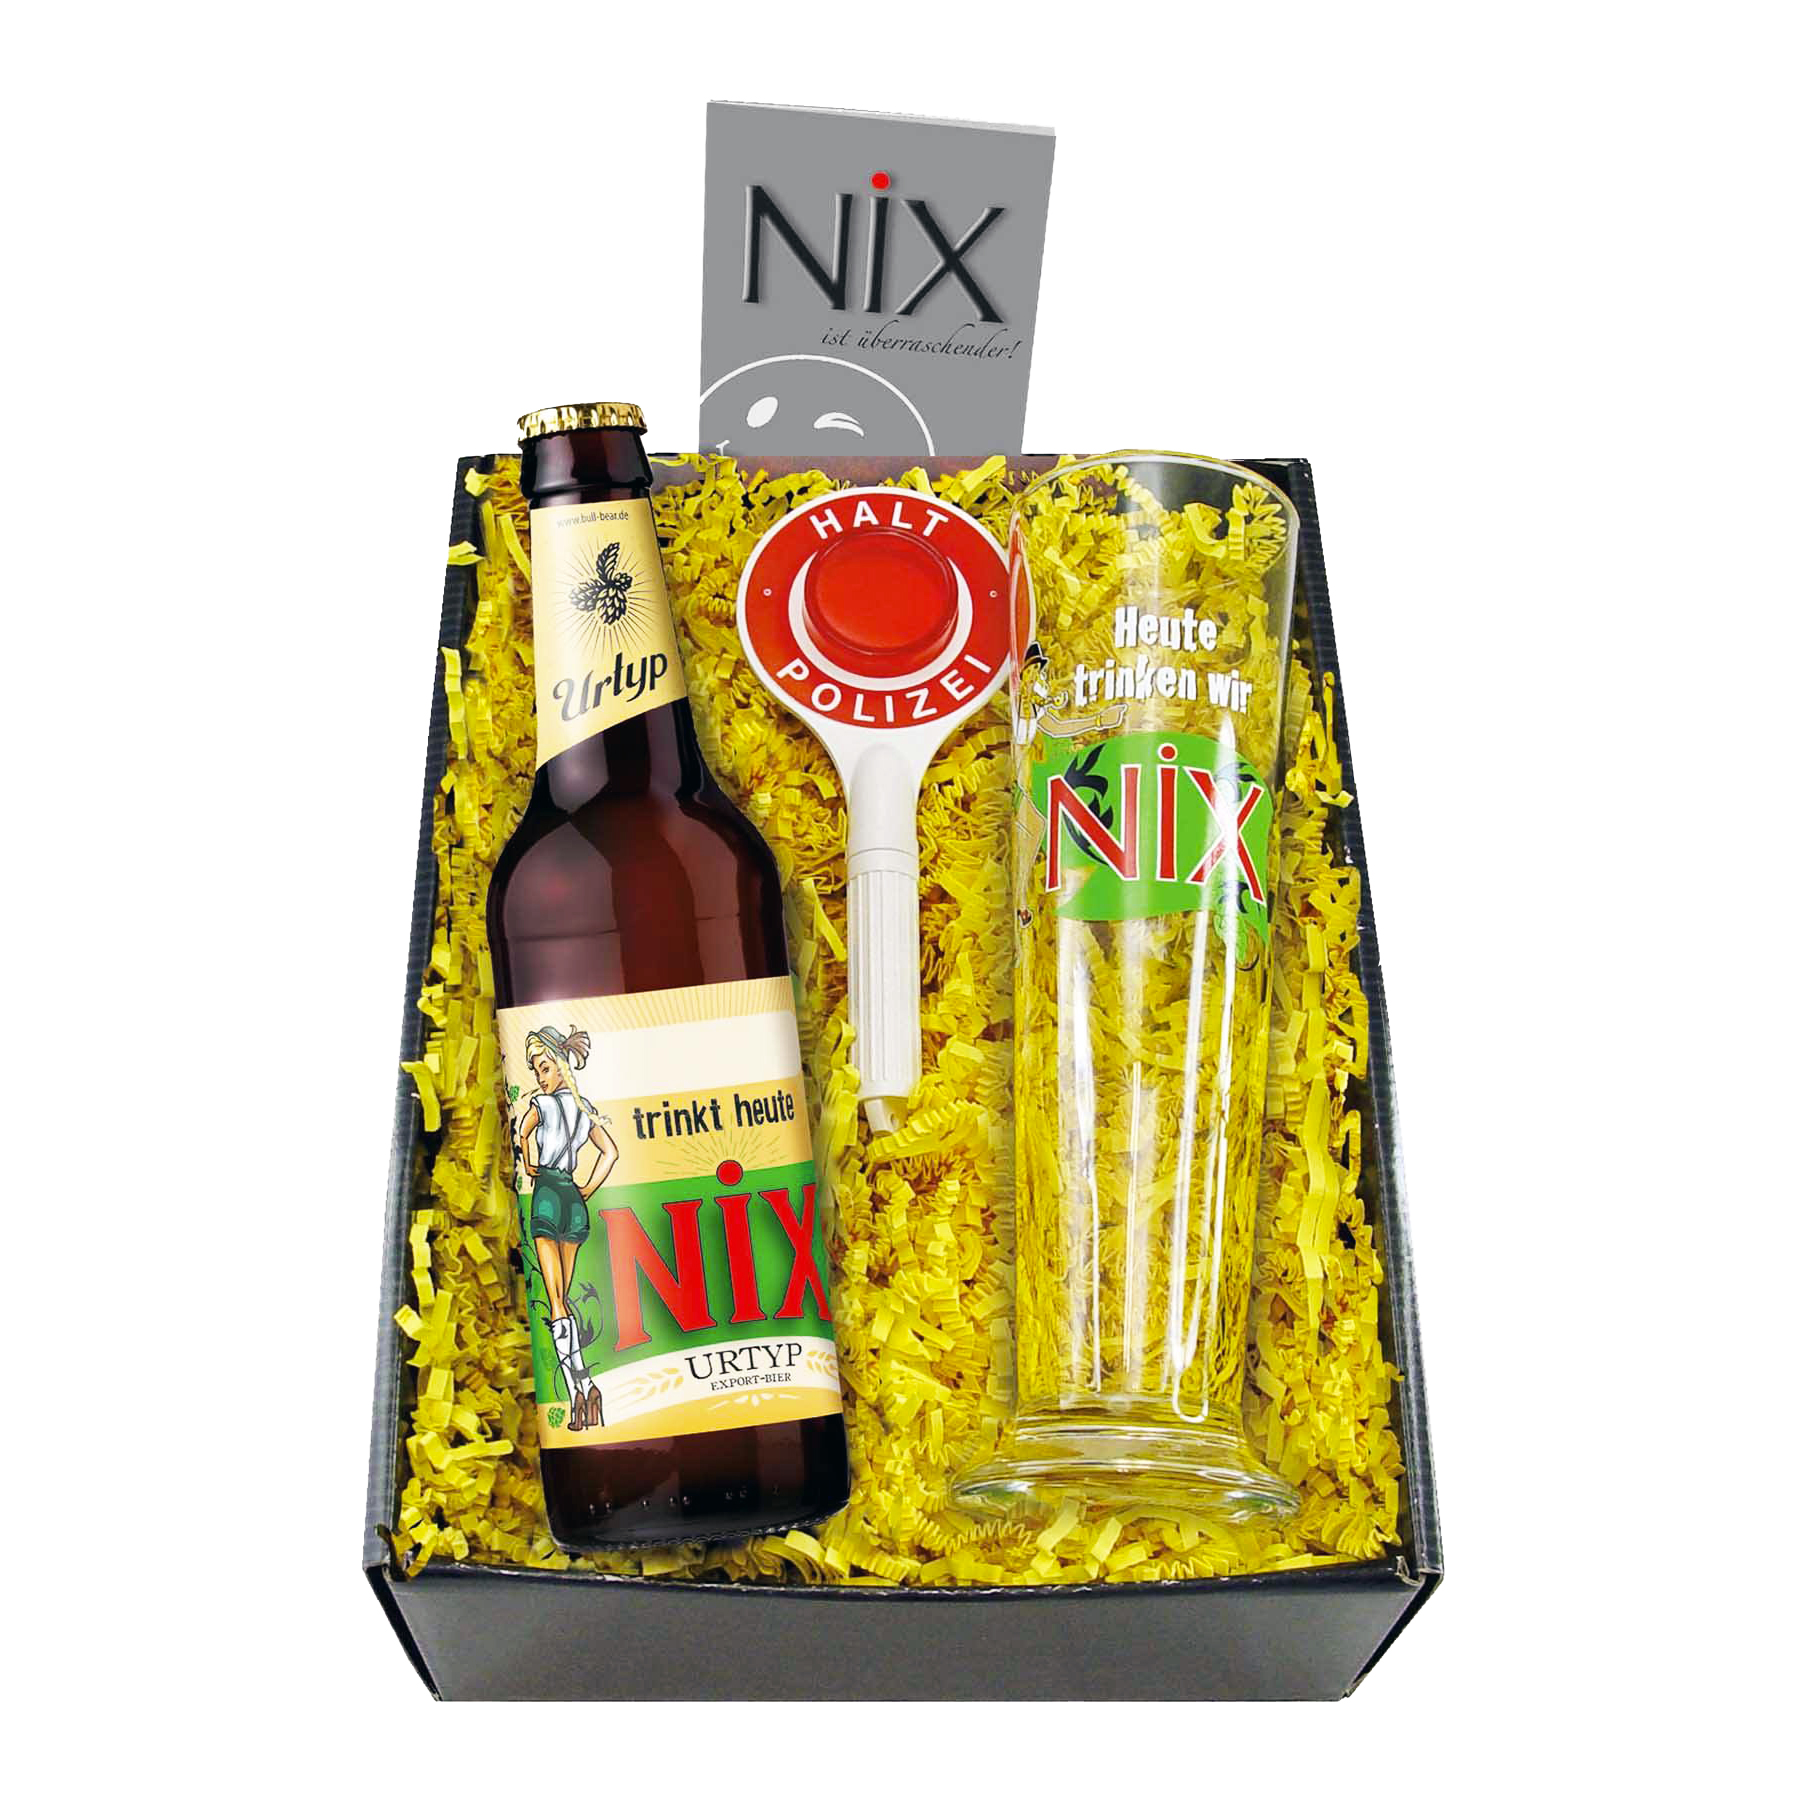 Das Nix-Geschenk für Biertrinker